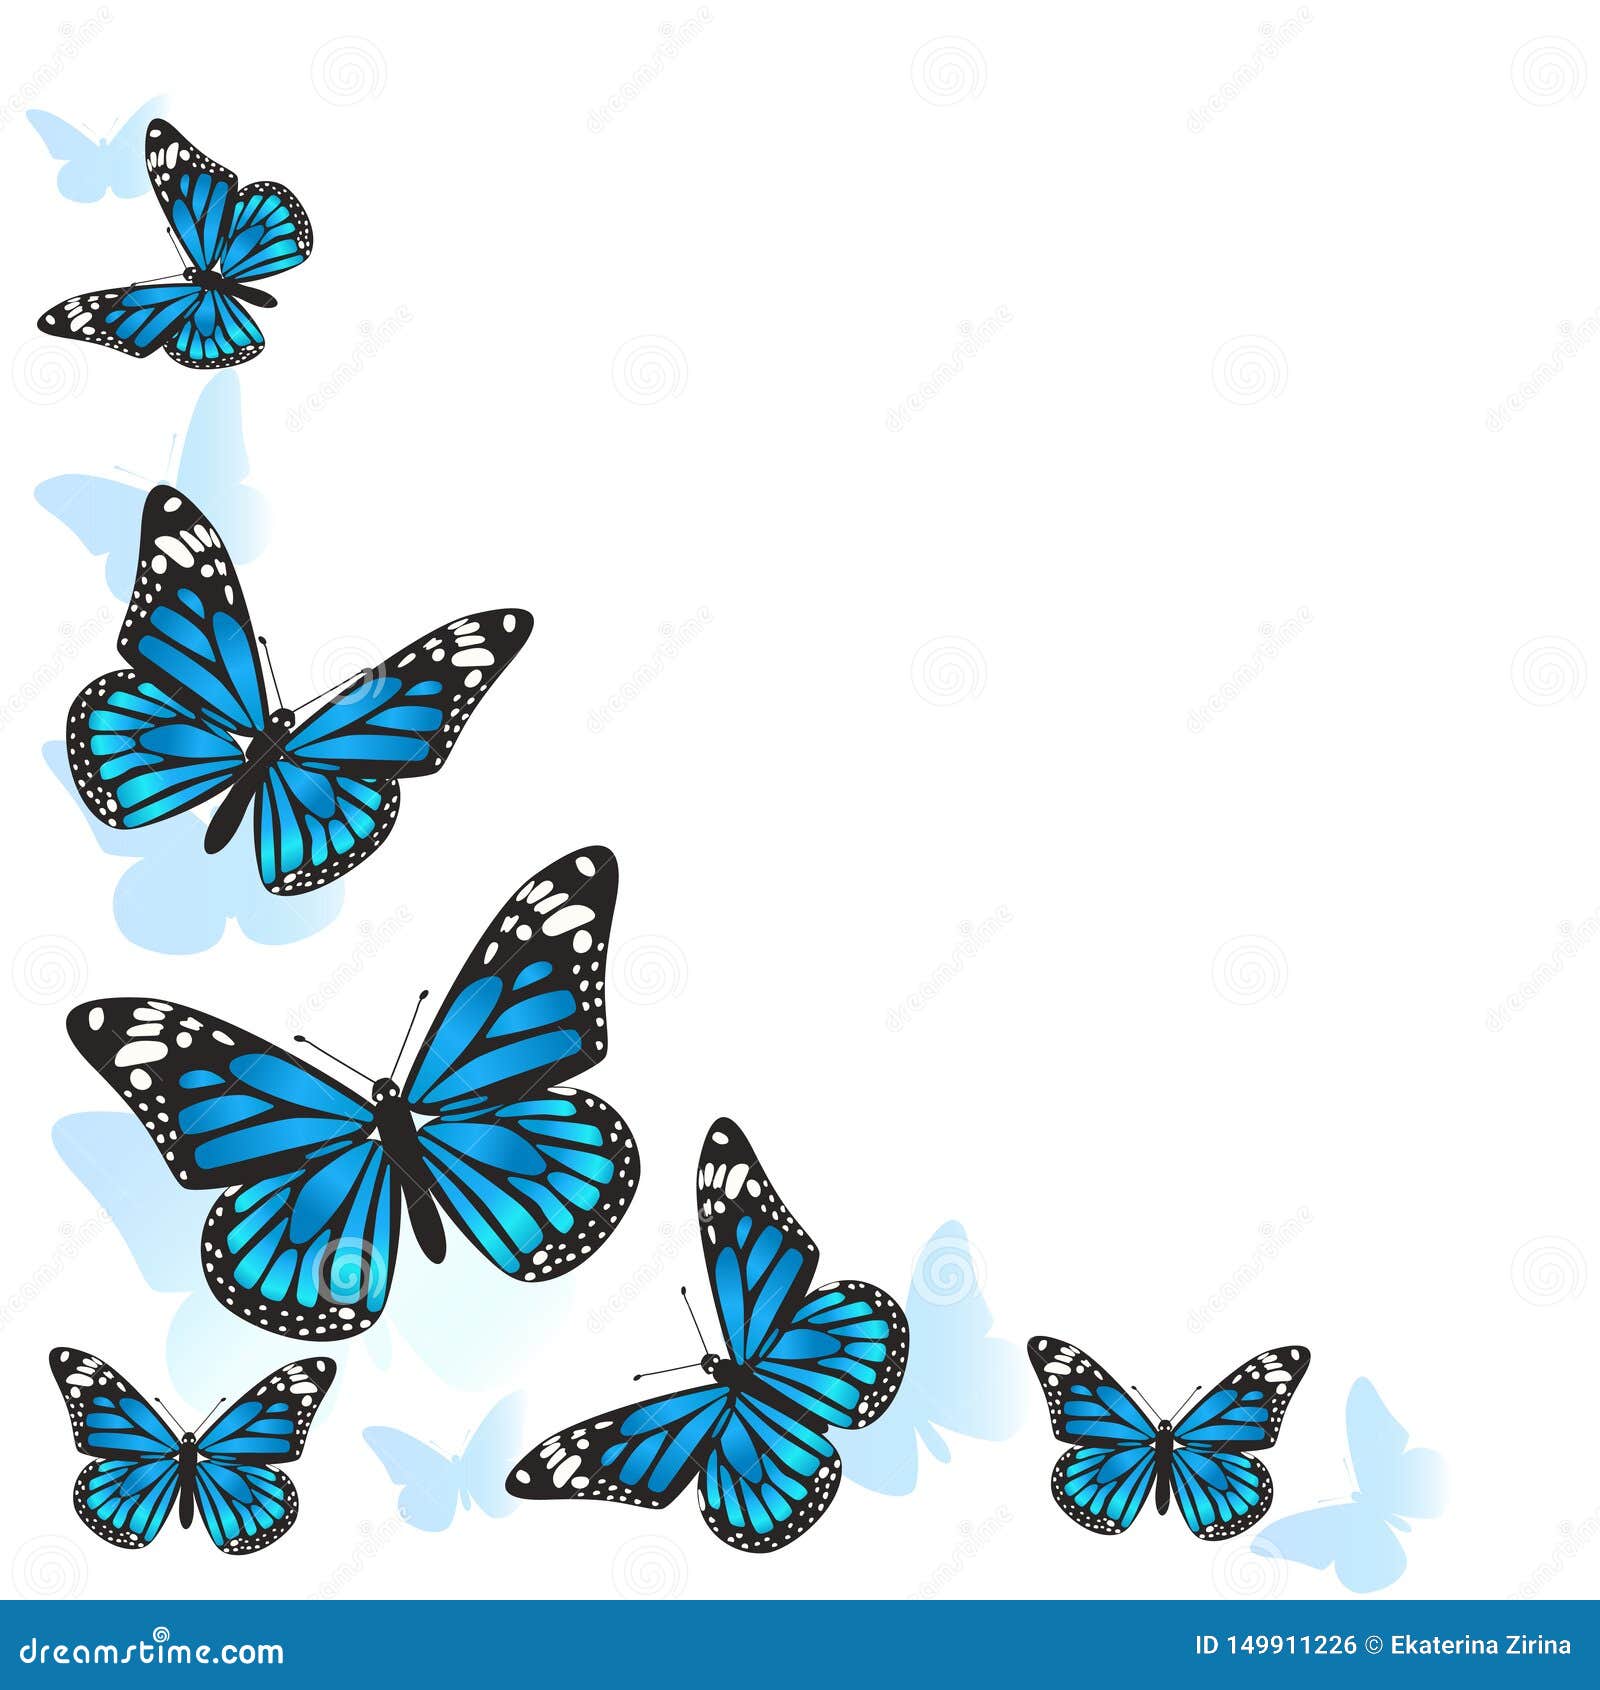 Thành phần của thiết kế là khung được làm bằng bướm xanh trên, tạo nên một bức hình bắt mắt và độc đáo. Hãy xem và tận hưởng sự kết hợp tuyệt vời giữa khung bướm xanh trên với phần còn lại của hình ảnh. 